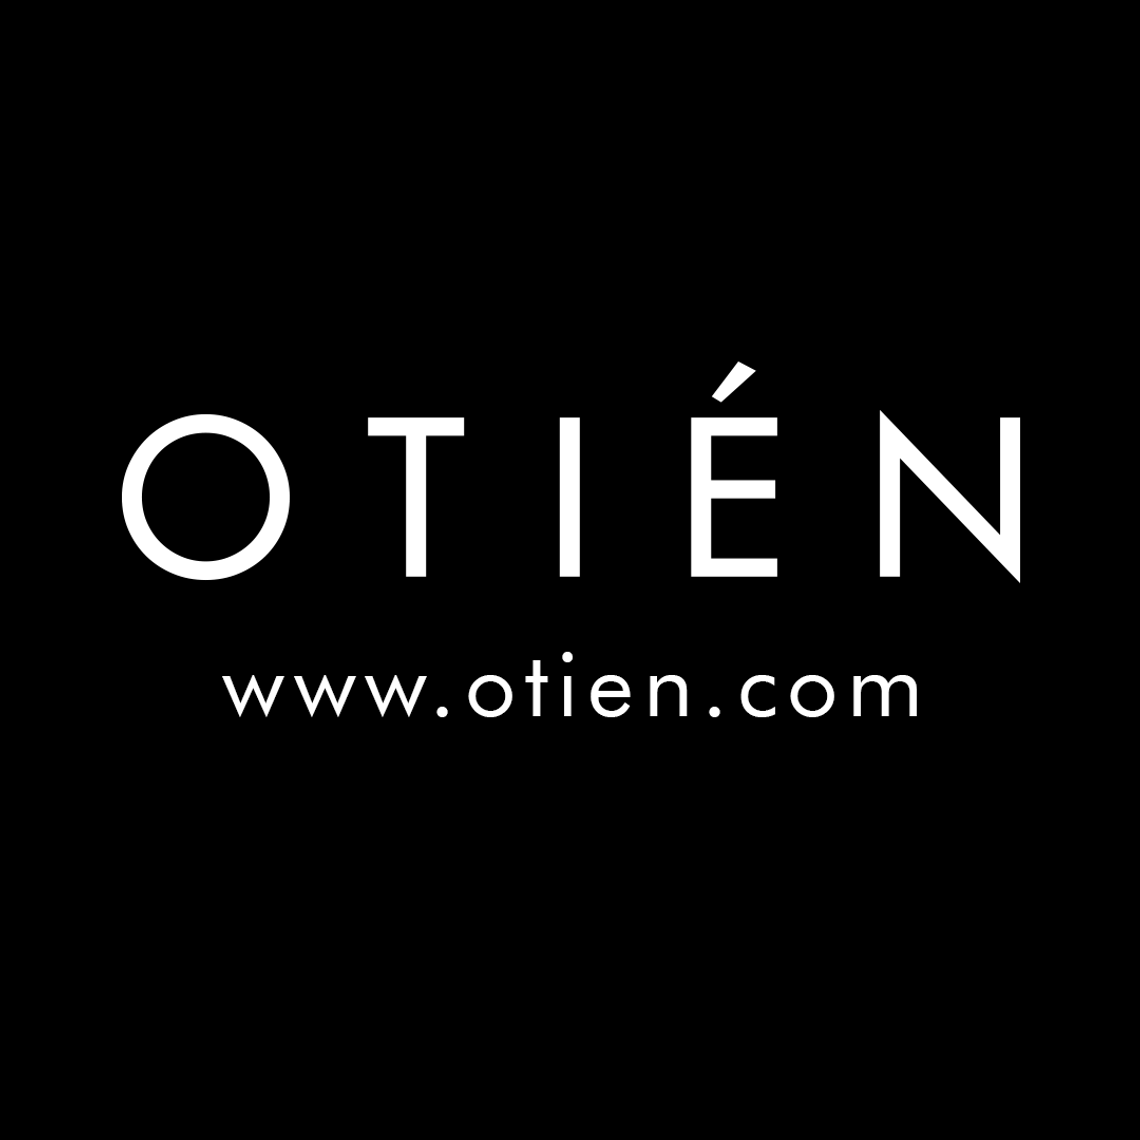 OTIEN - sklep internetowy z biżuterią